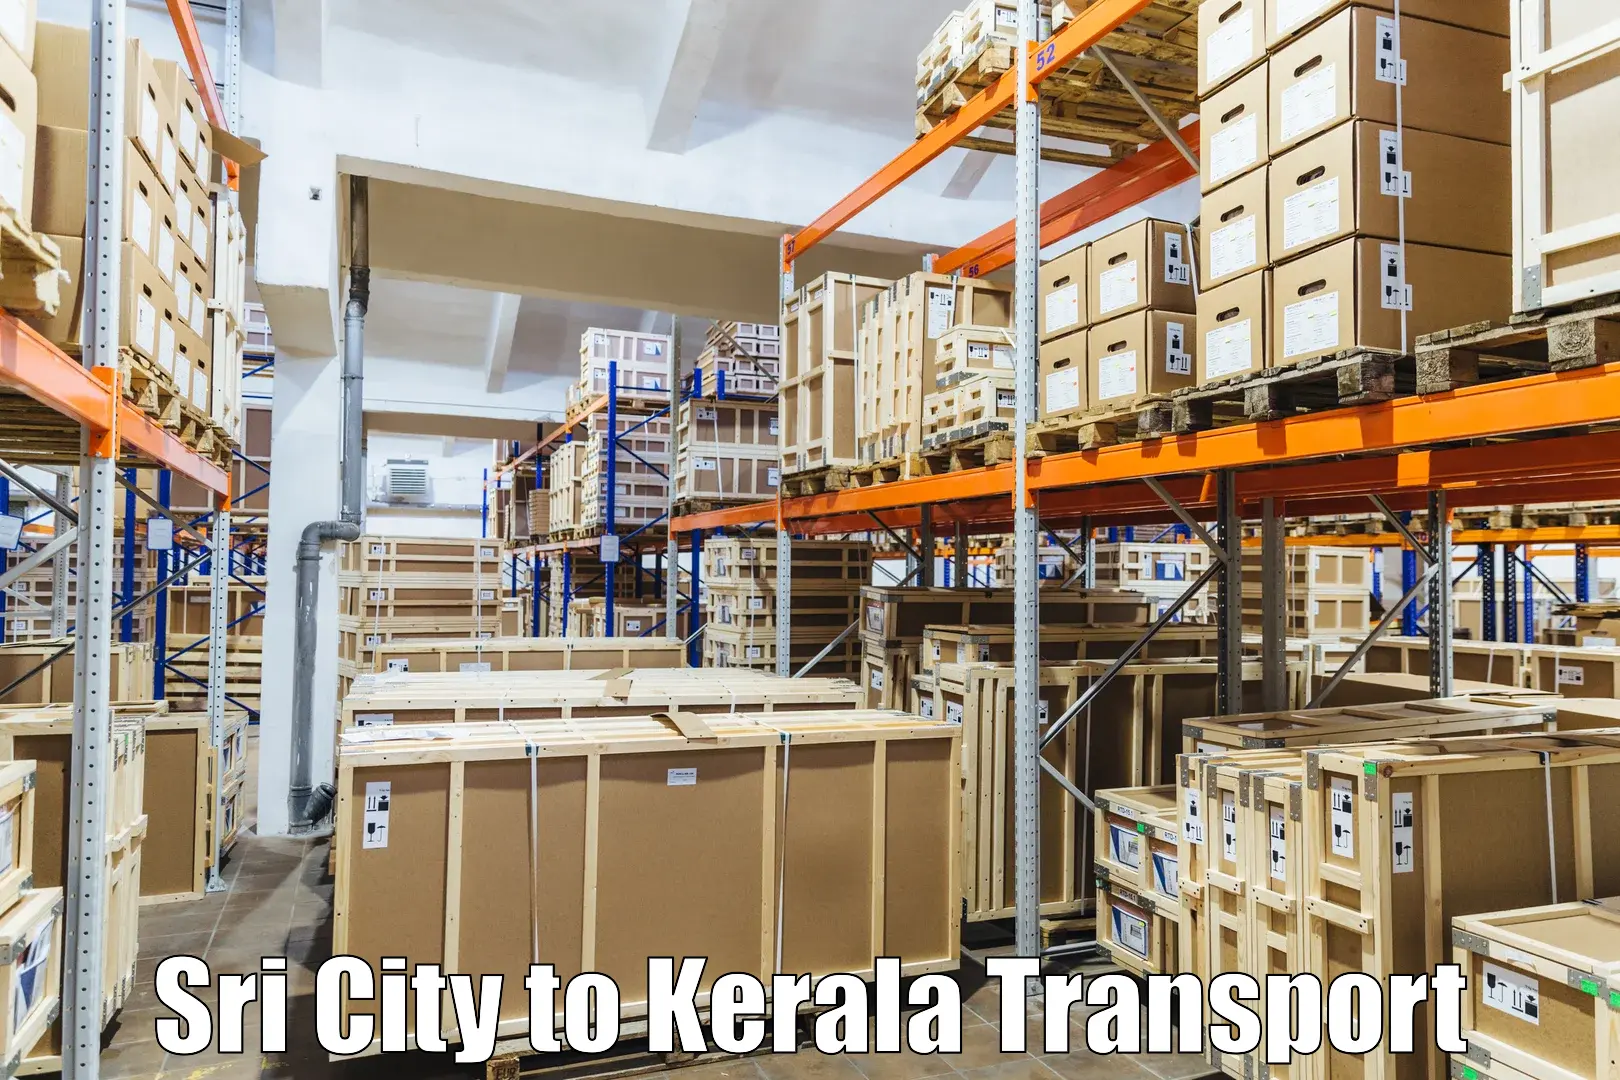 Delivery service Sri City to Ranni